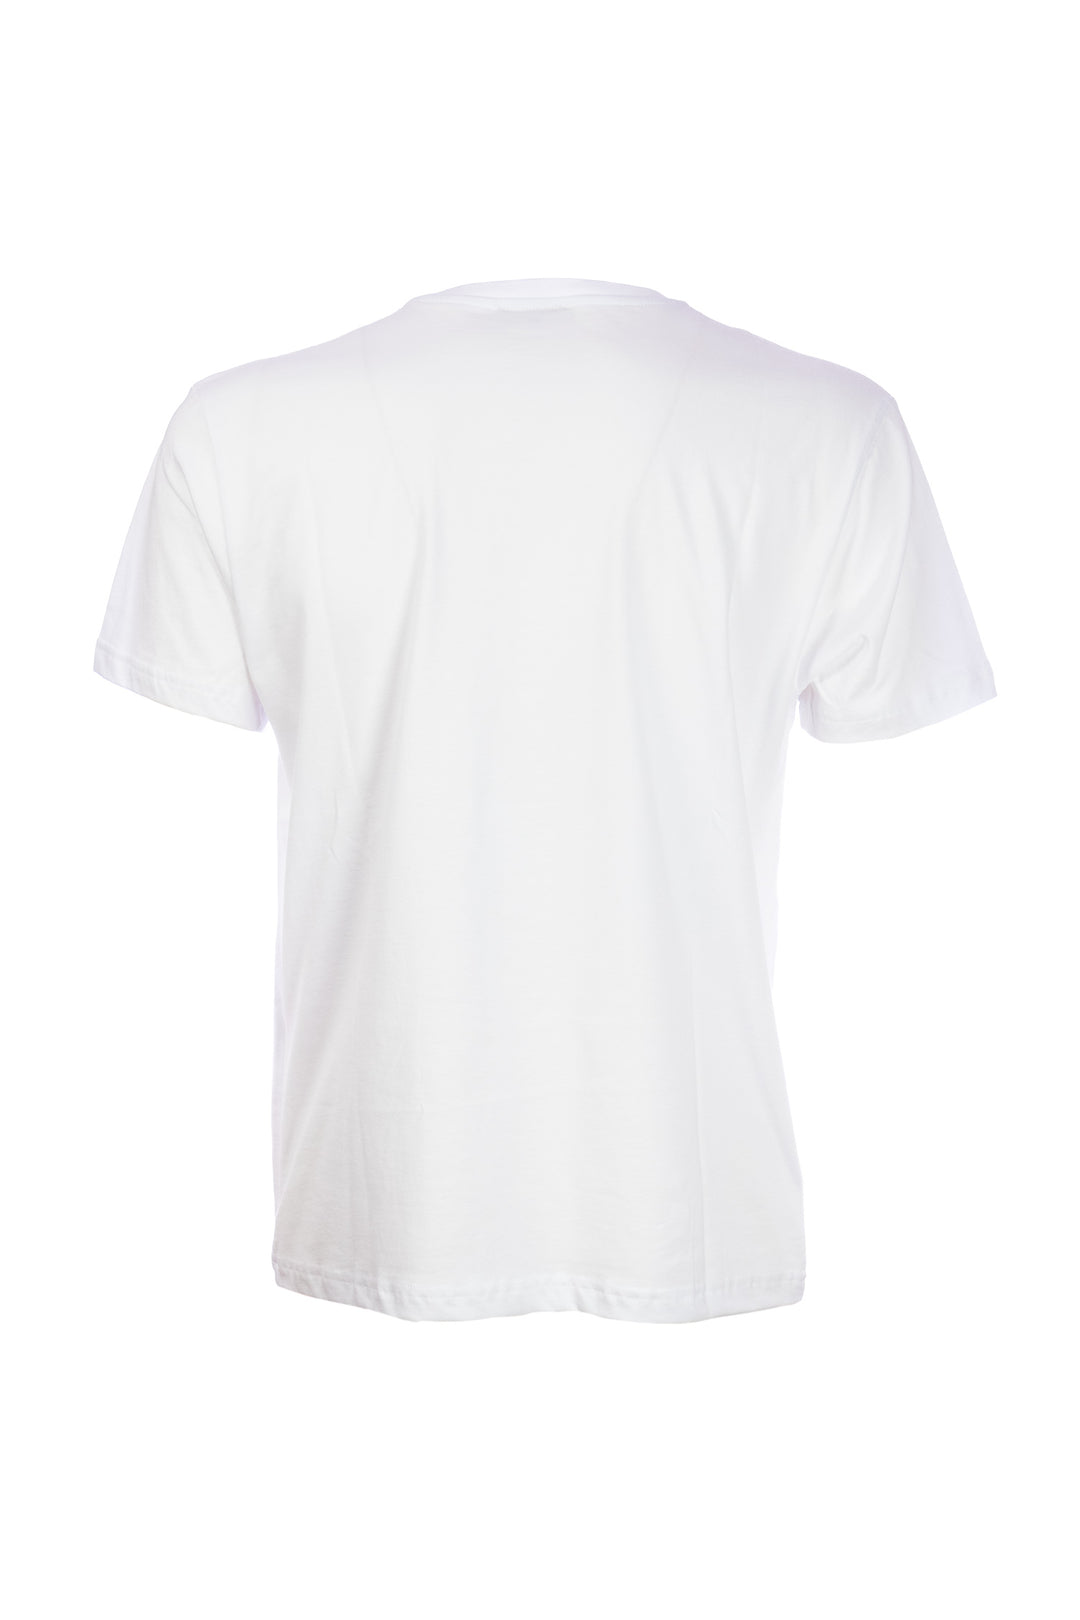 W-POSTAGE T-shirt bianca in cotone con taschino stampato con tartarughe - Mancinelli 1954